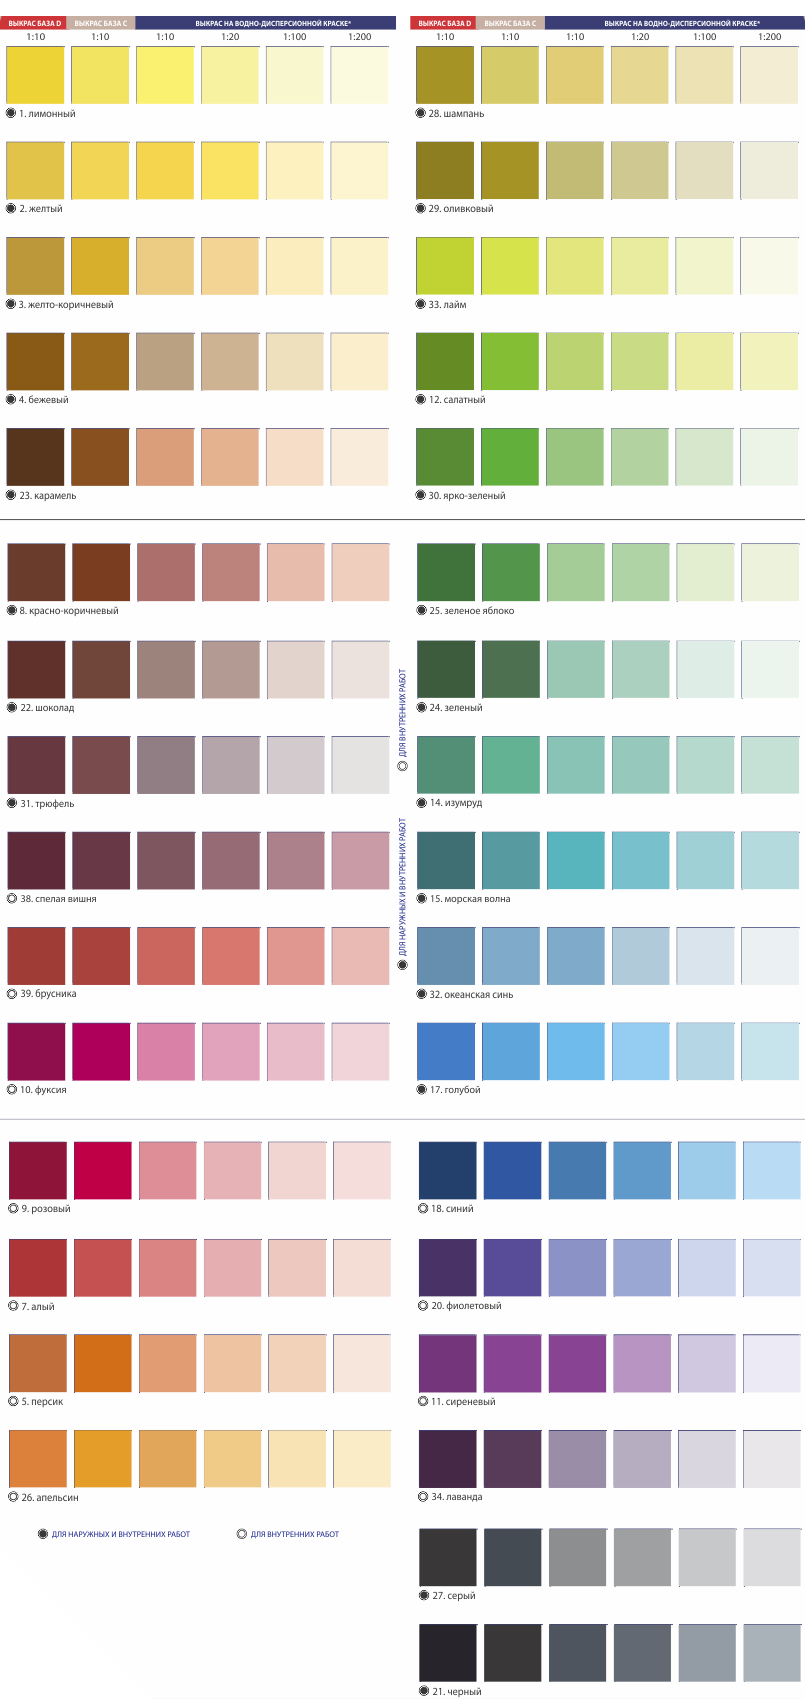 Колеровка краски: краски палитра цветов для стен, таблица колеровки краски пропорции смешивания цветов своими руками